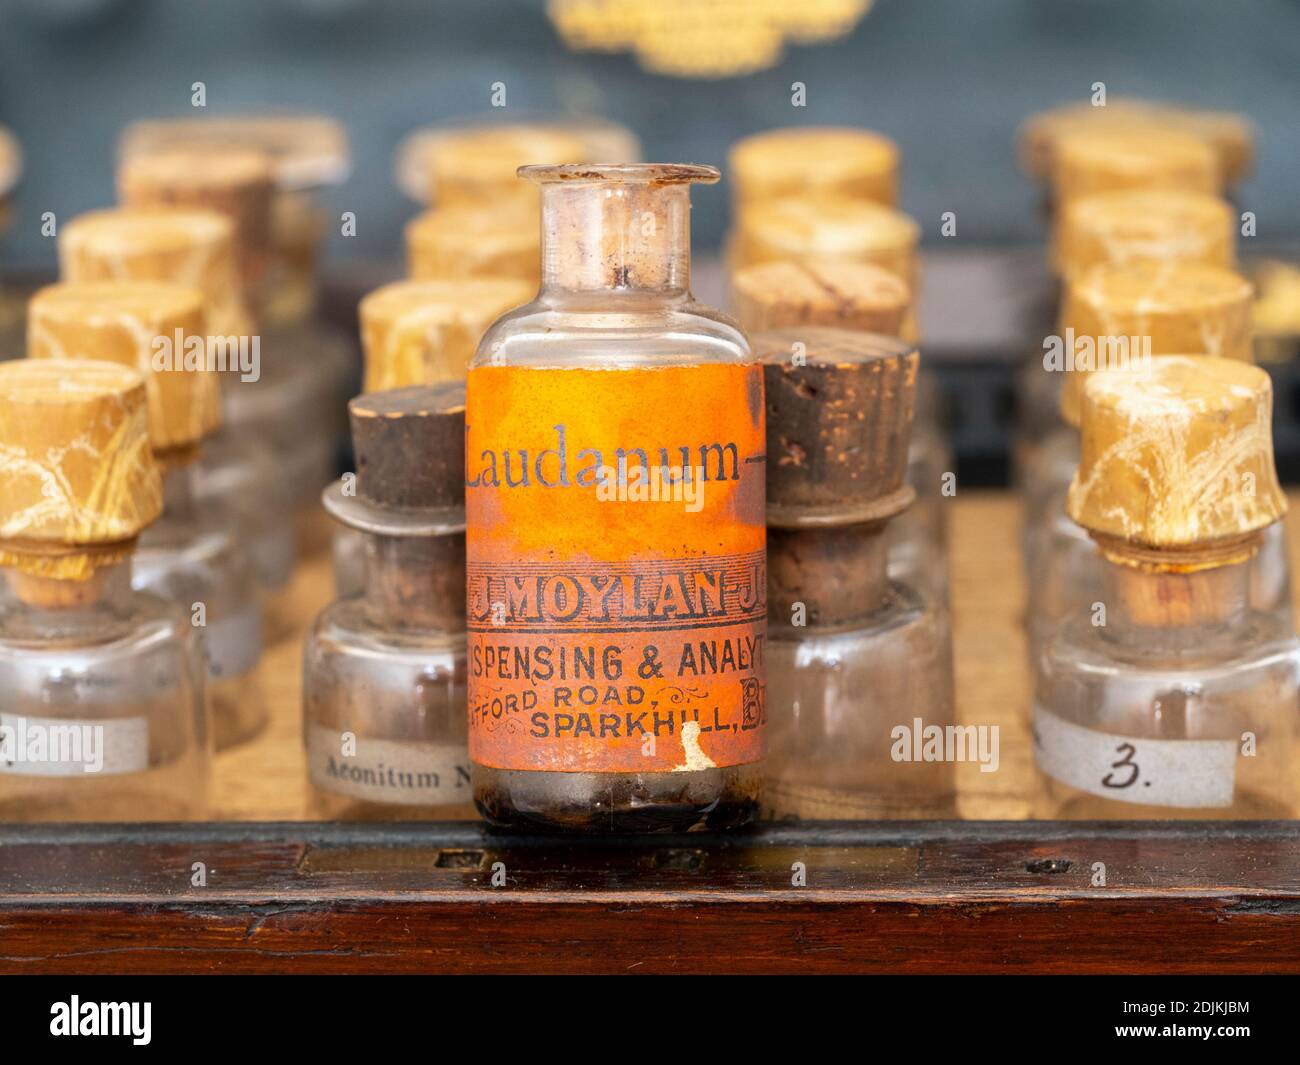 Laudanum (Tincture of Opium), 19th century medicine Stock Photo